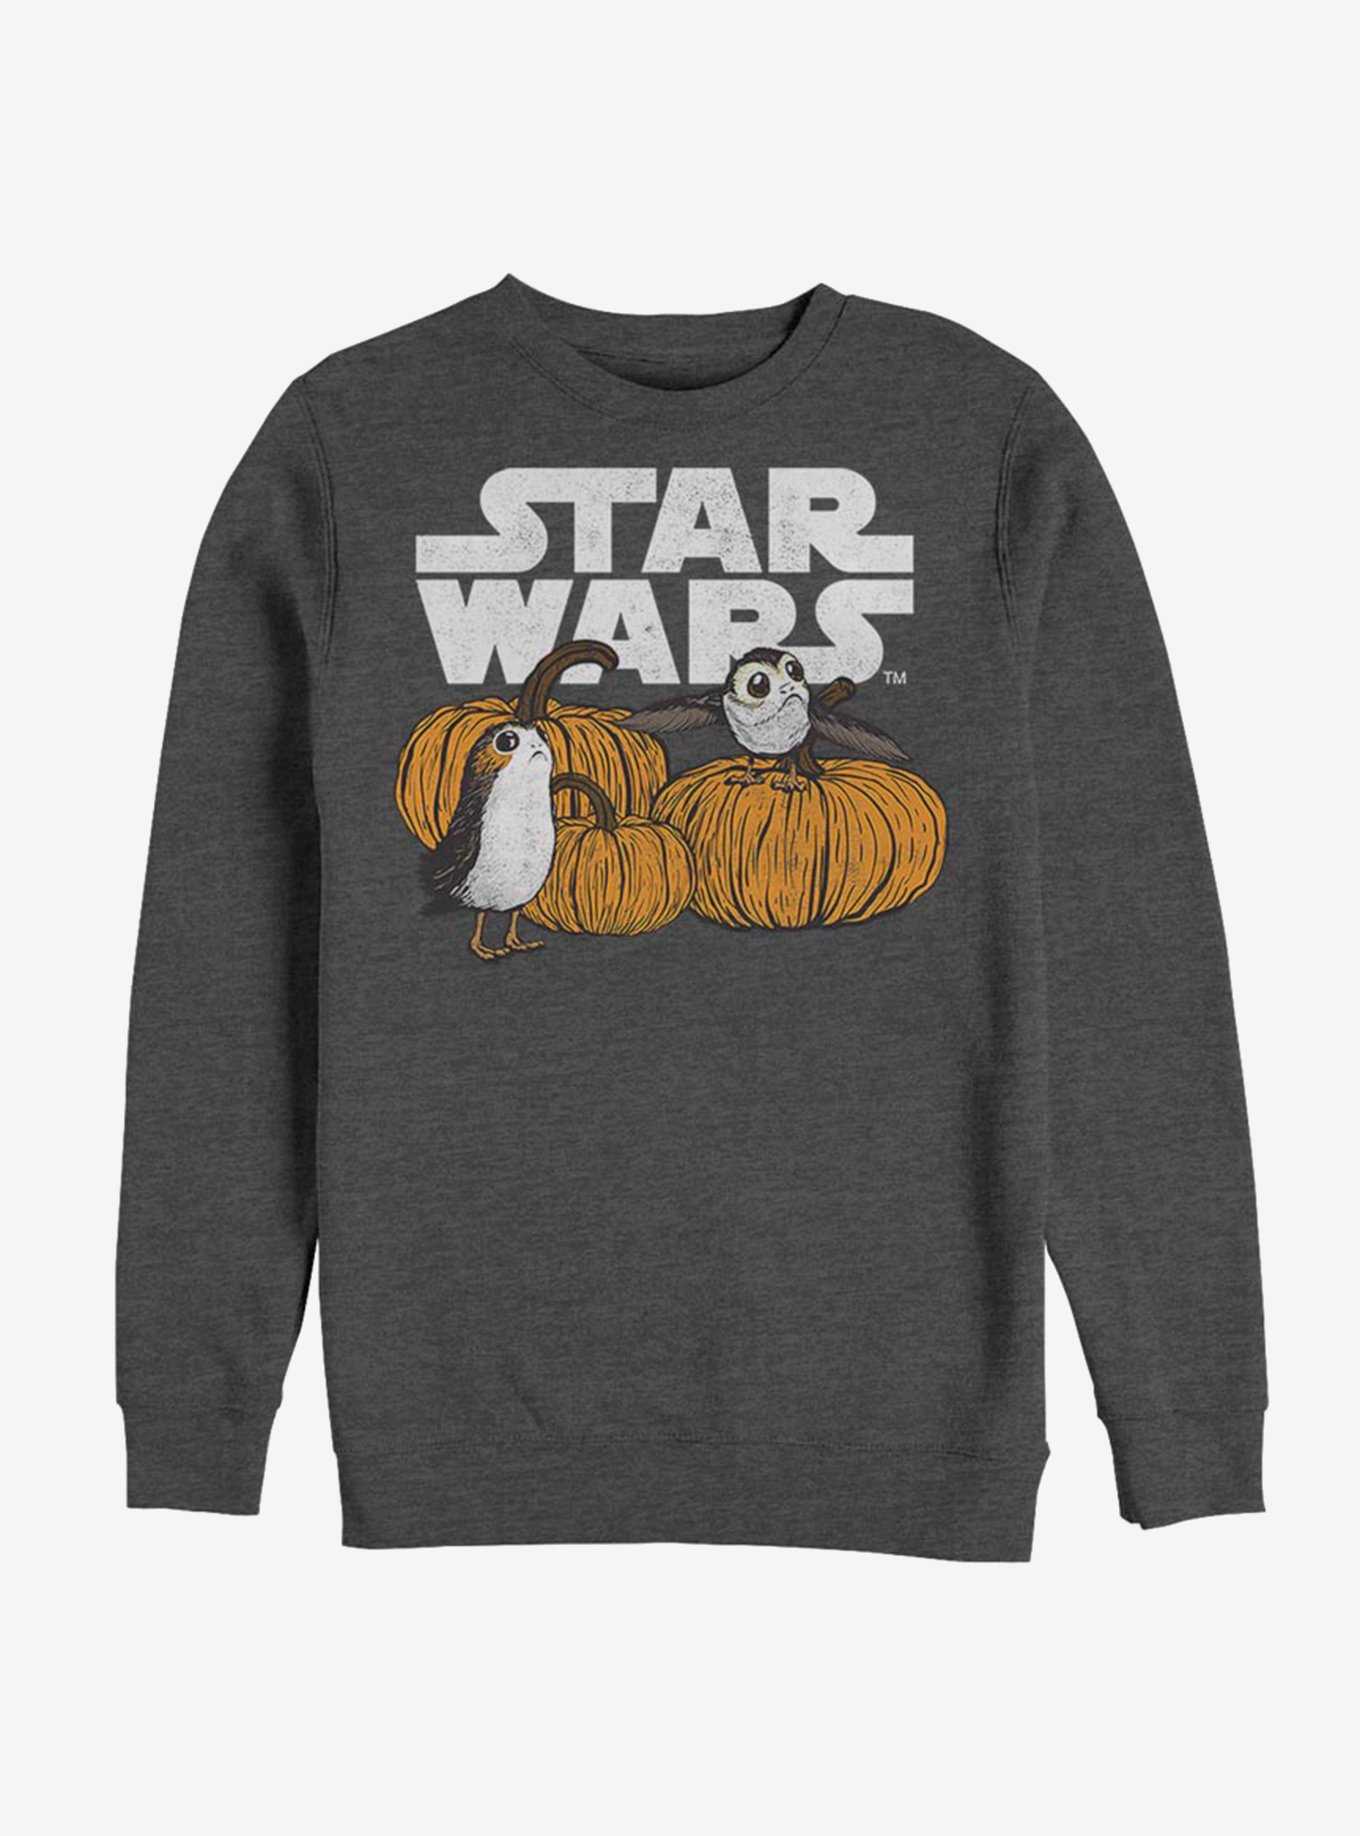 Star Wars Episode VIII The Last Jedi Pumpkin Patch Porg Sweatshirt, , hi-res